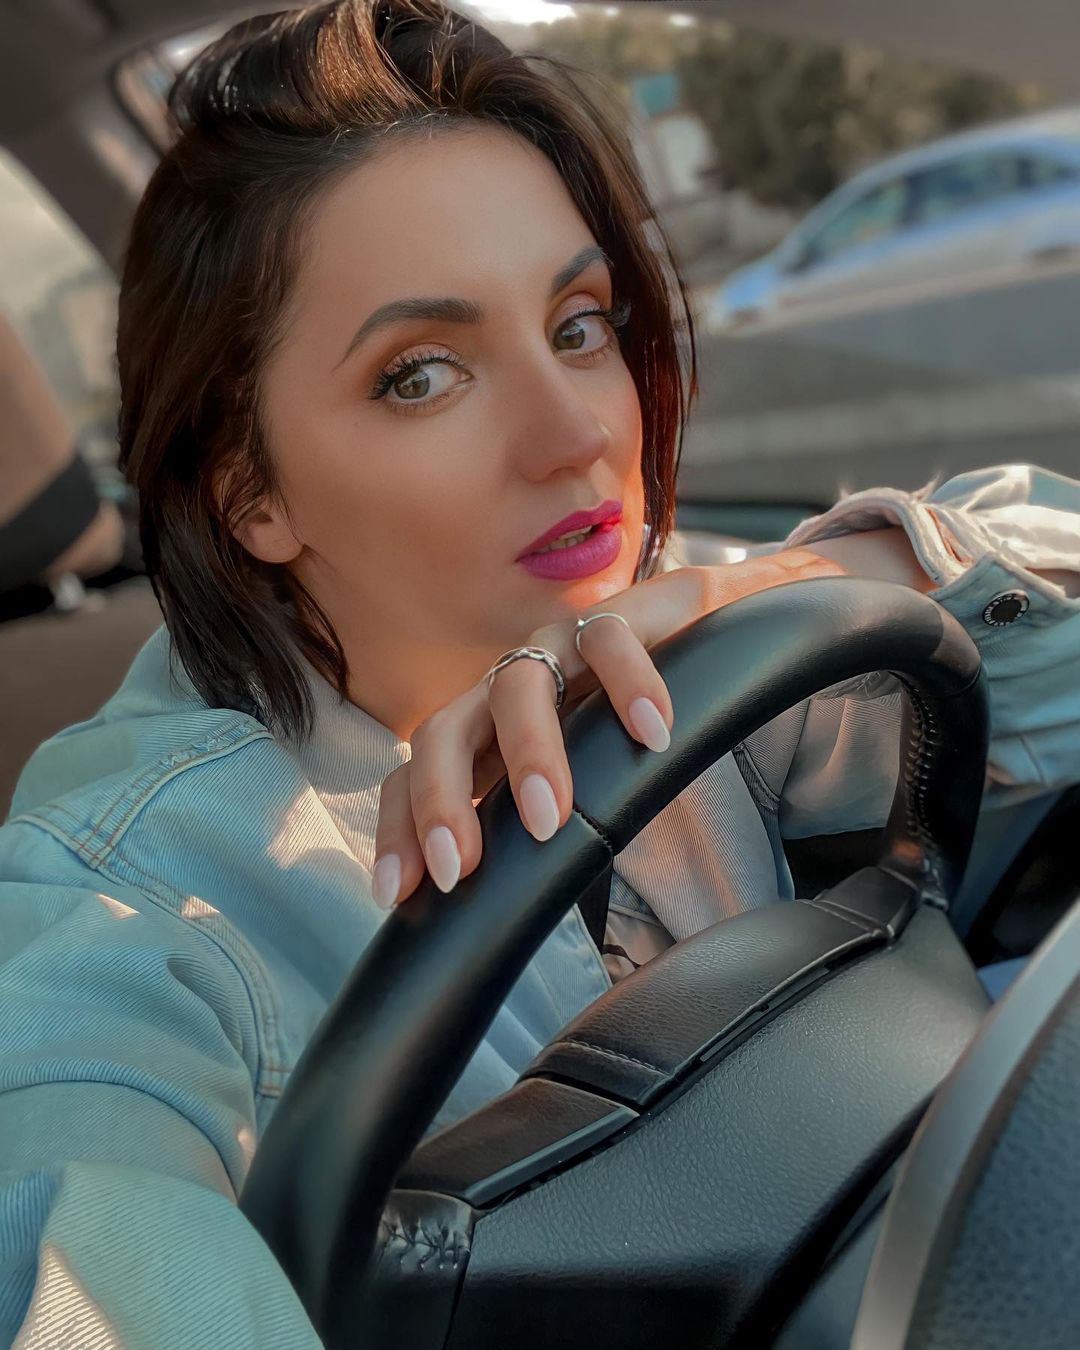 Оля Цибульська заплатила дві тисячі гривень, щоб забрати авто зі штрафмайданчика. Фото: Instagram.com/cybulskaya/